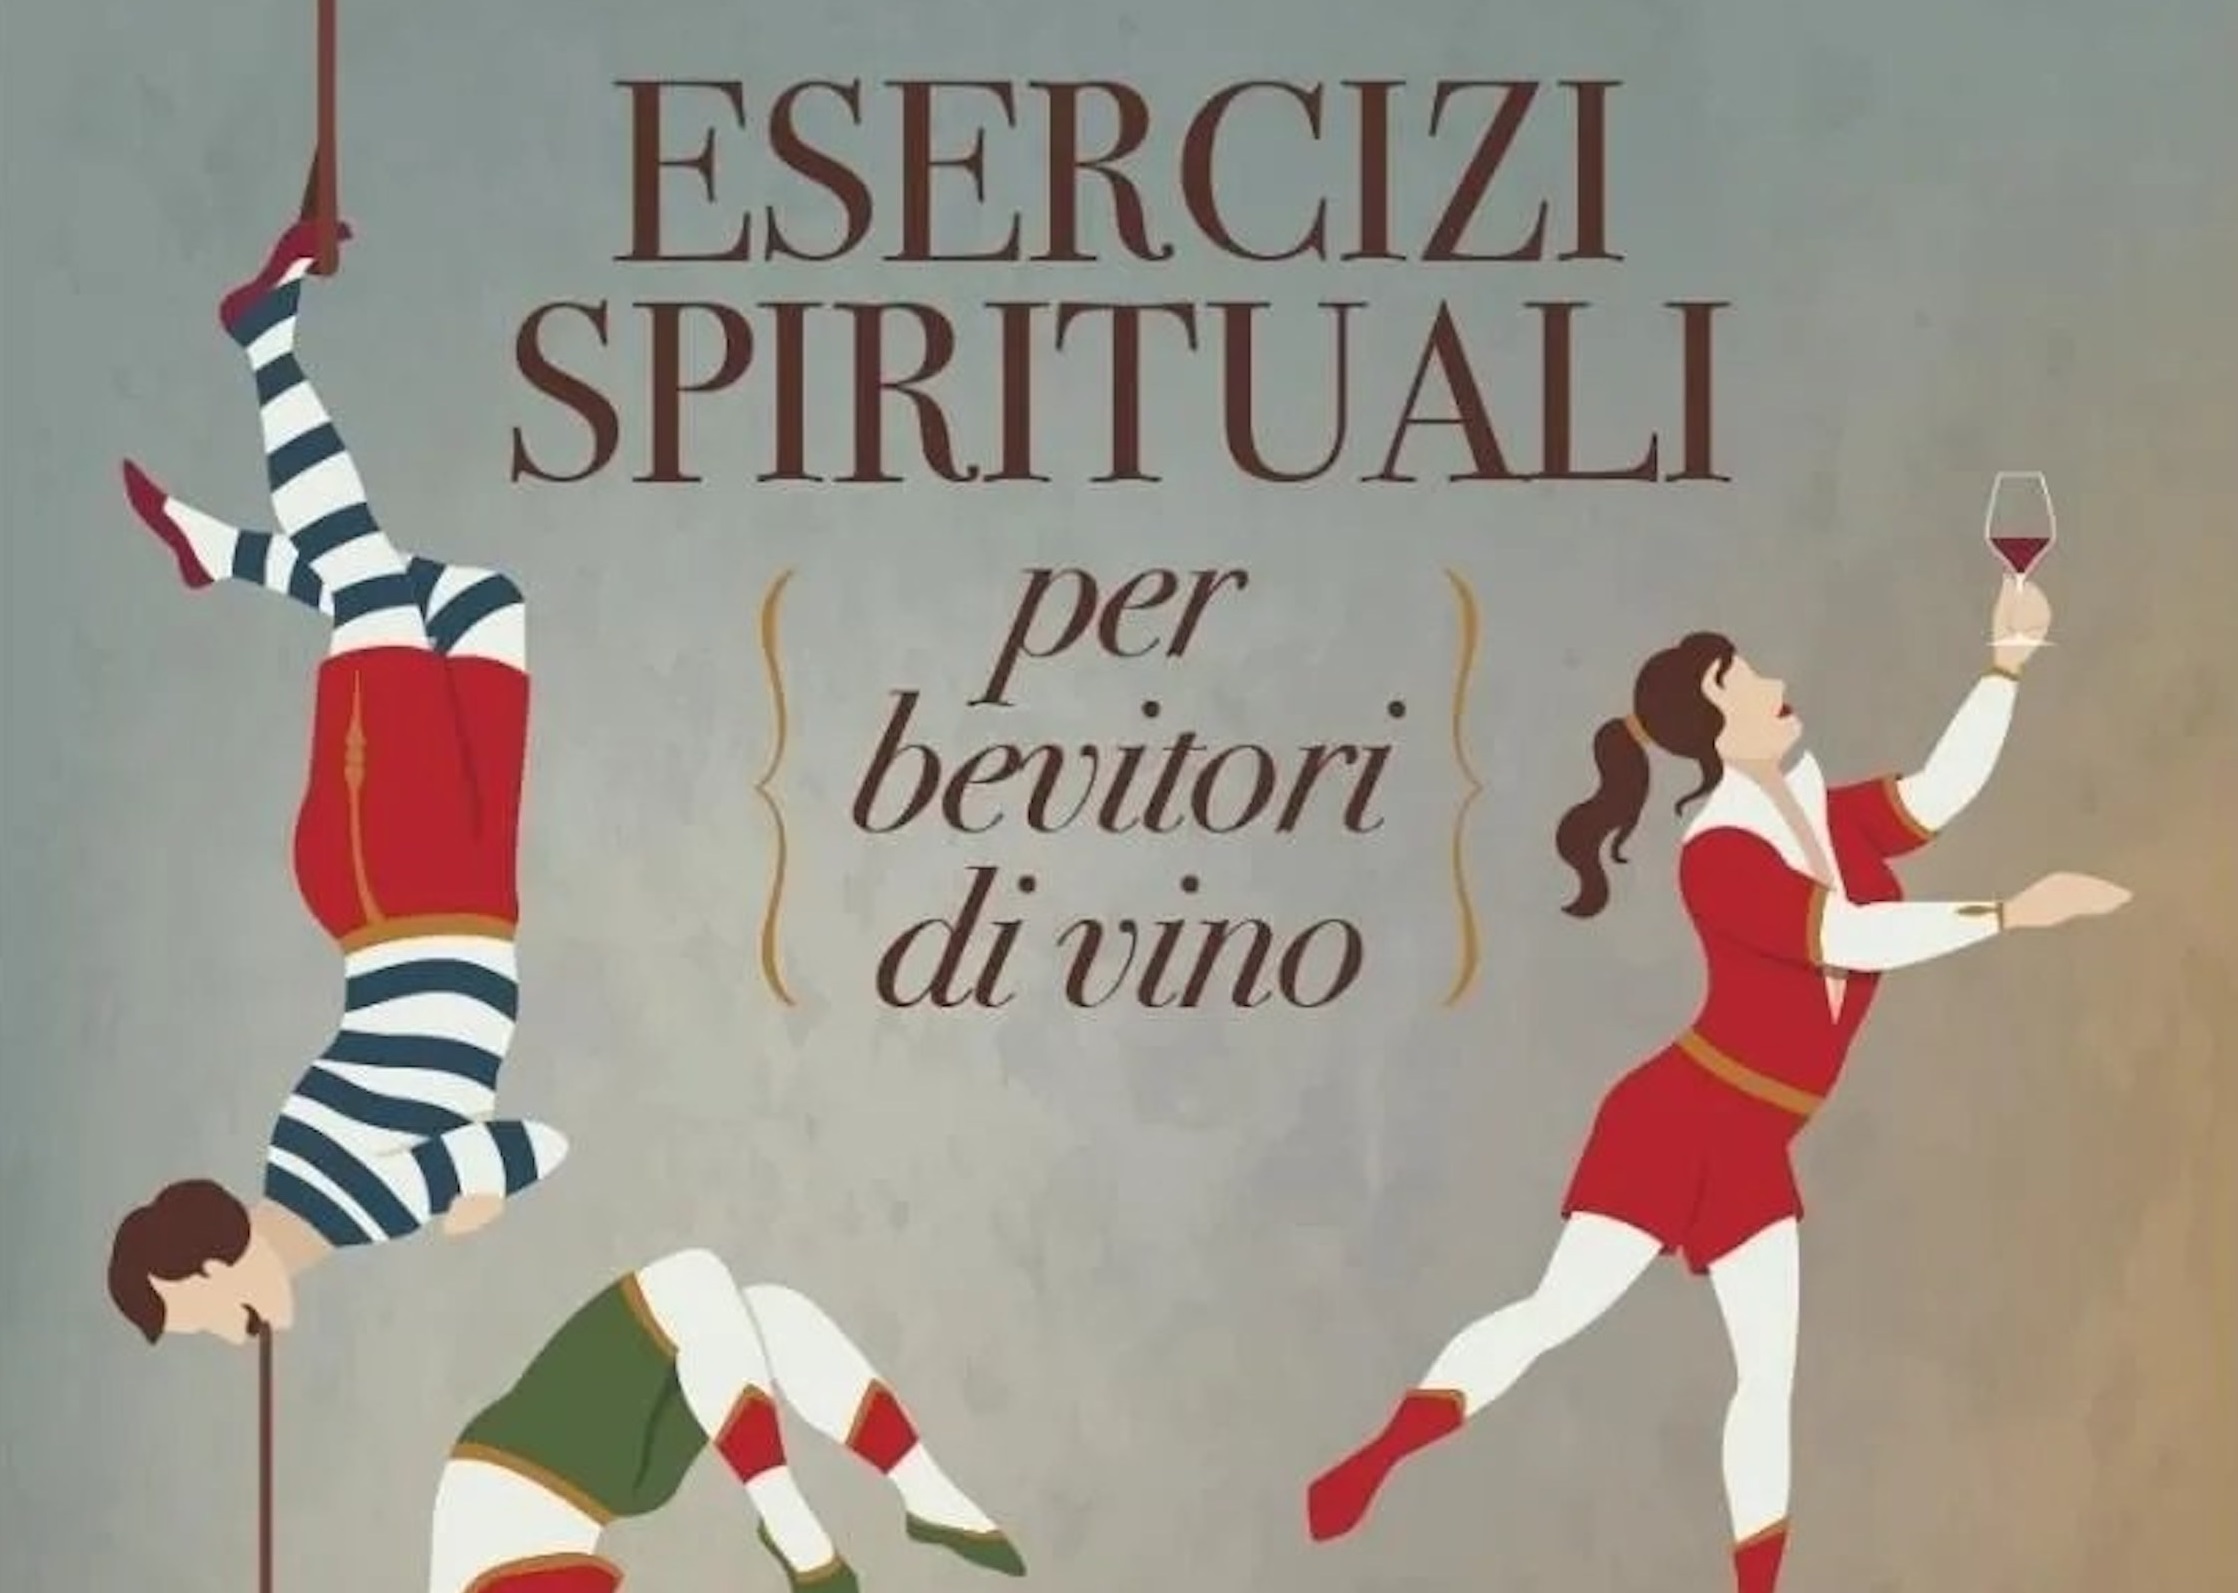 Angelo Peretti e gli "Esercizi spirituali per bevitori di vino"